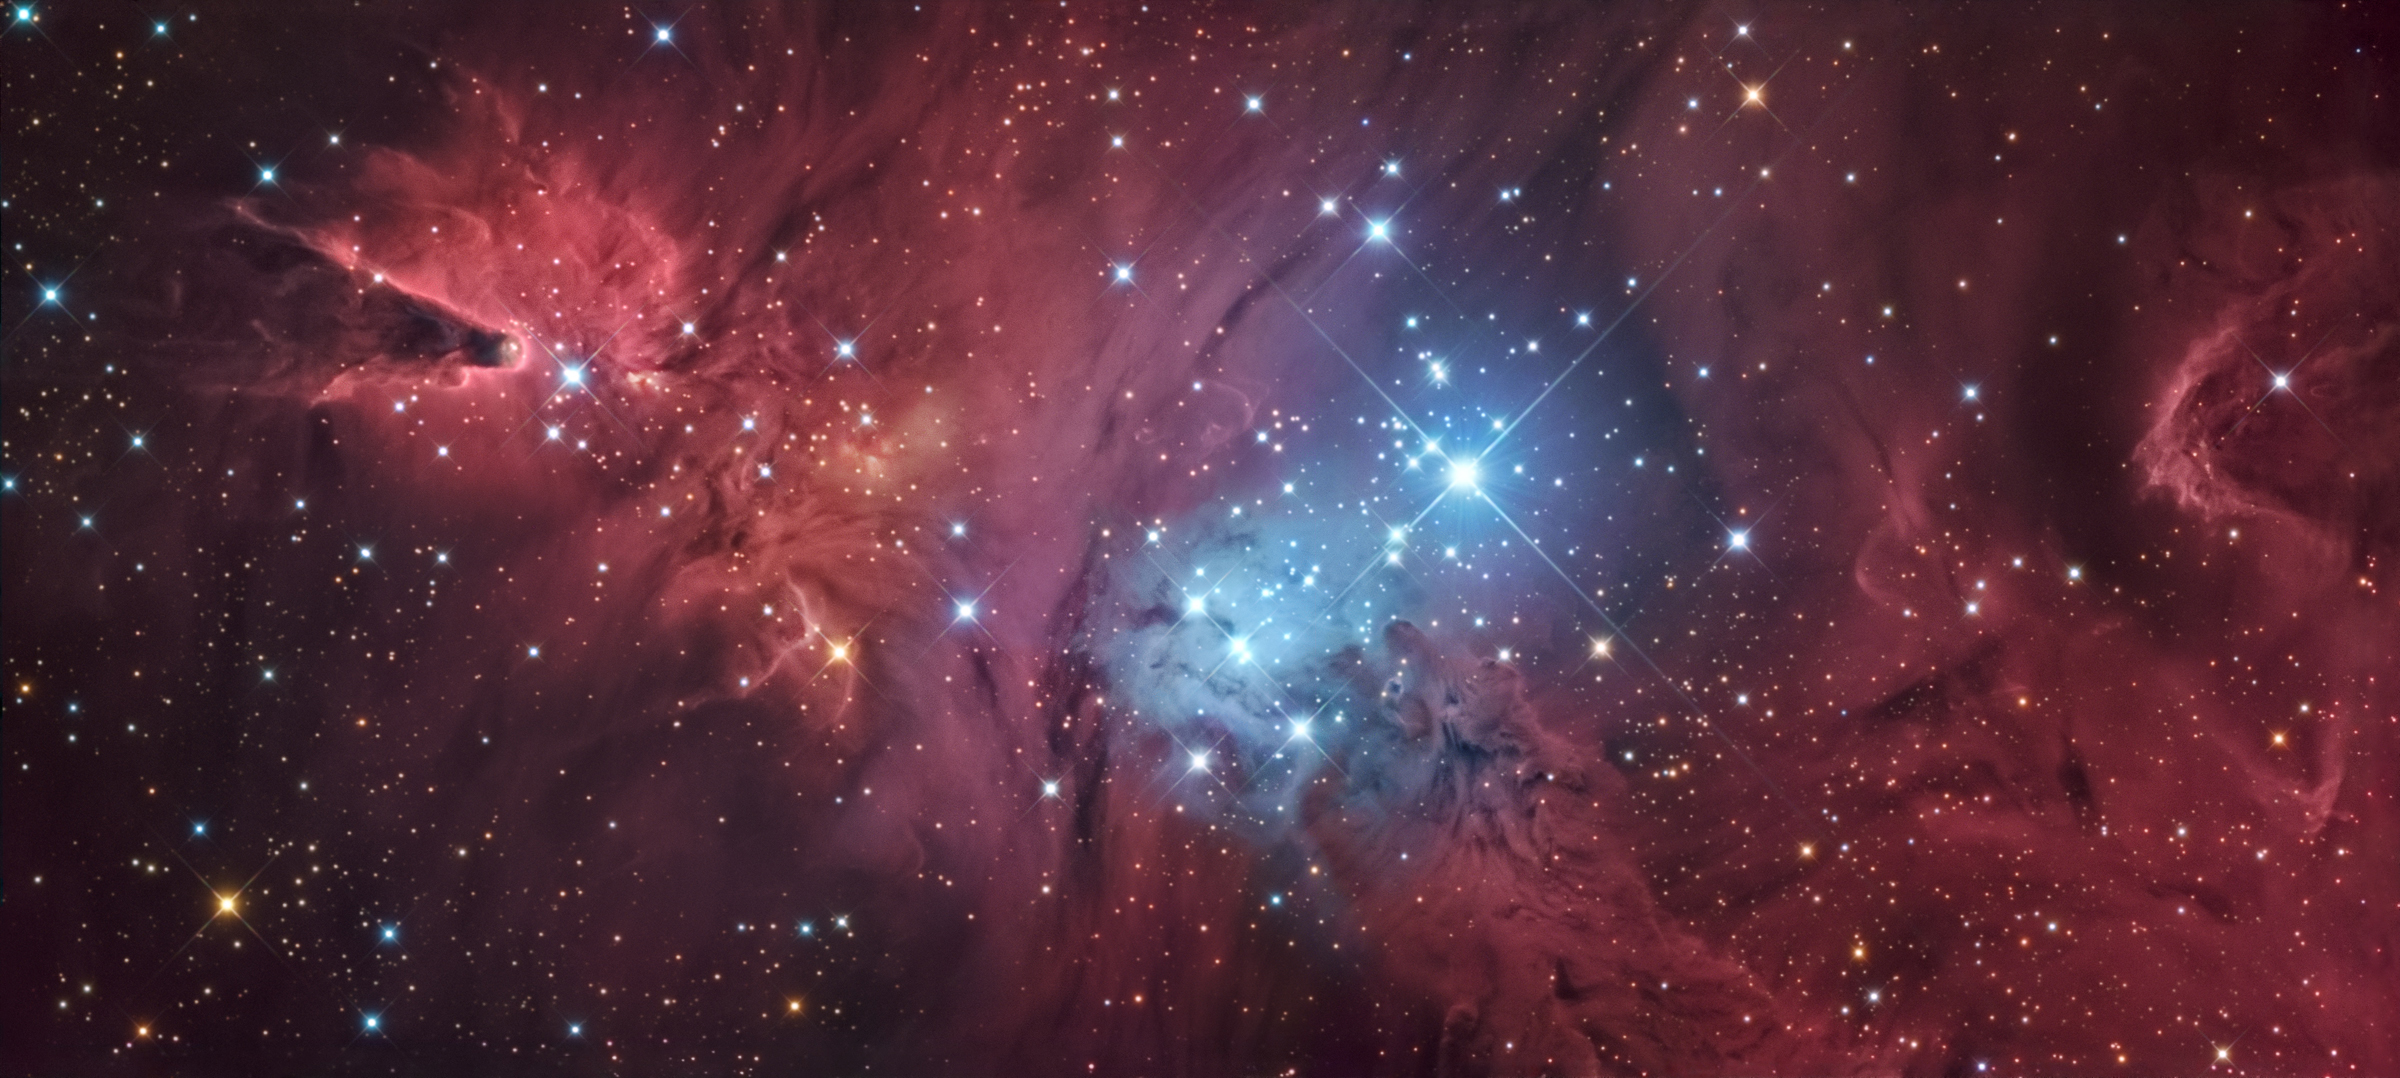 NGC2264_Full_2019